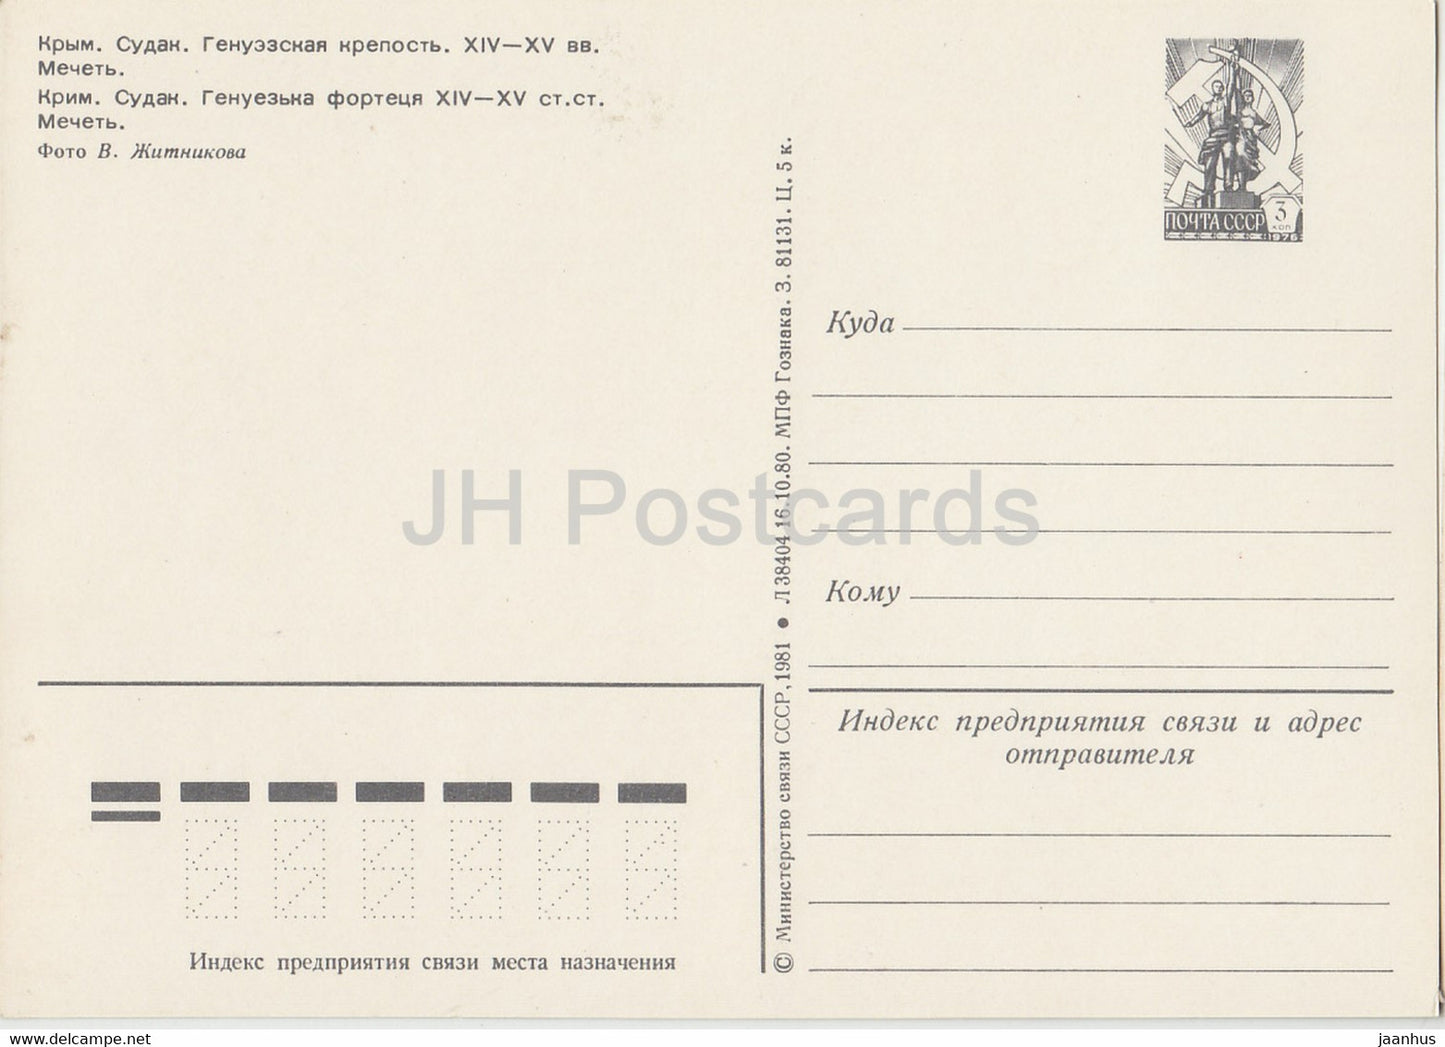 Crimea - Sudak - Genoese fortress - postal stationery - 1981 - Ukraine USSR - unused